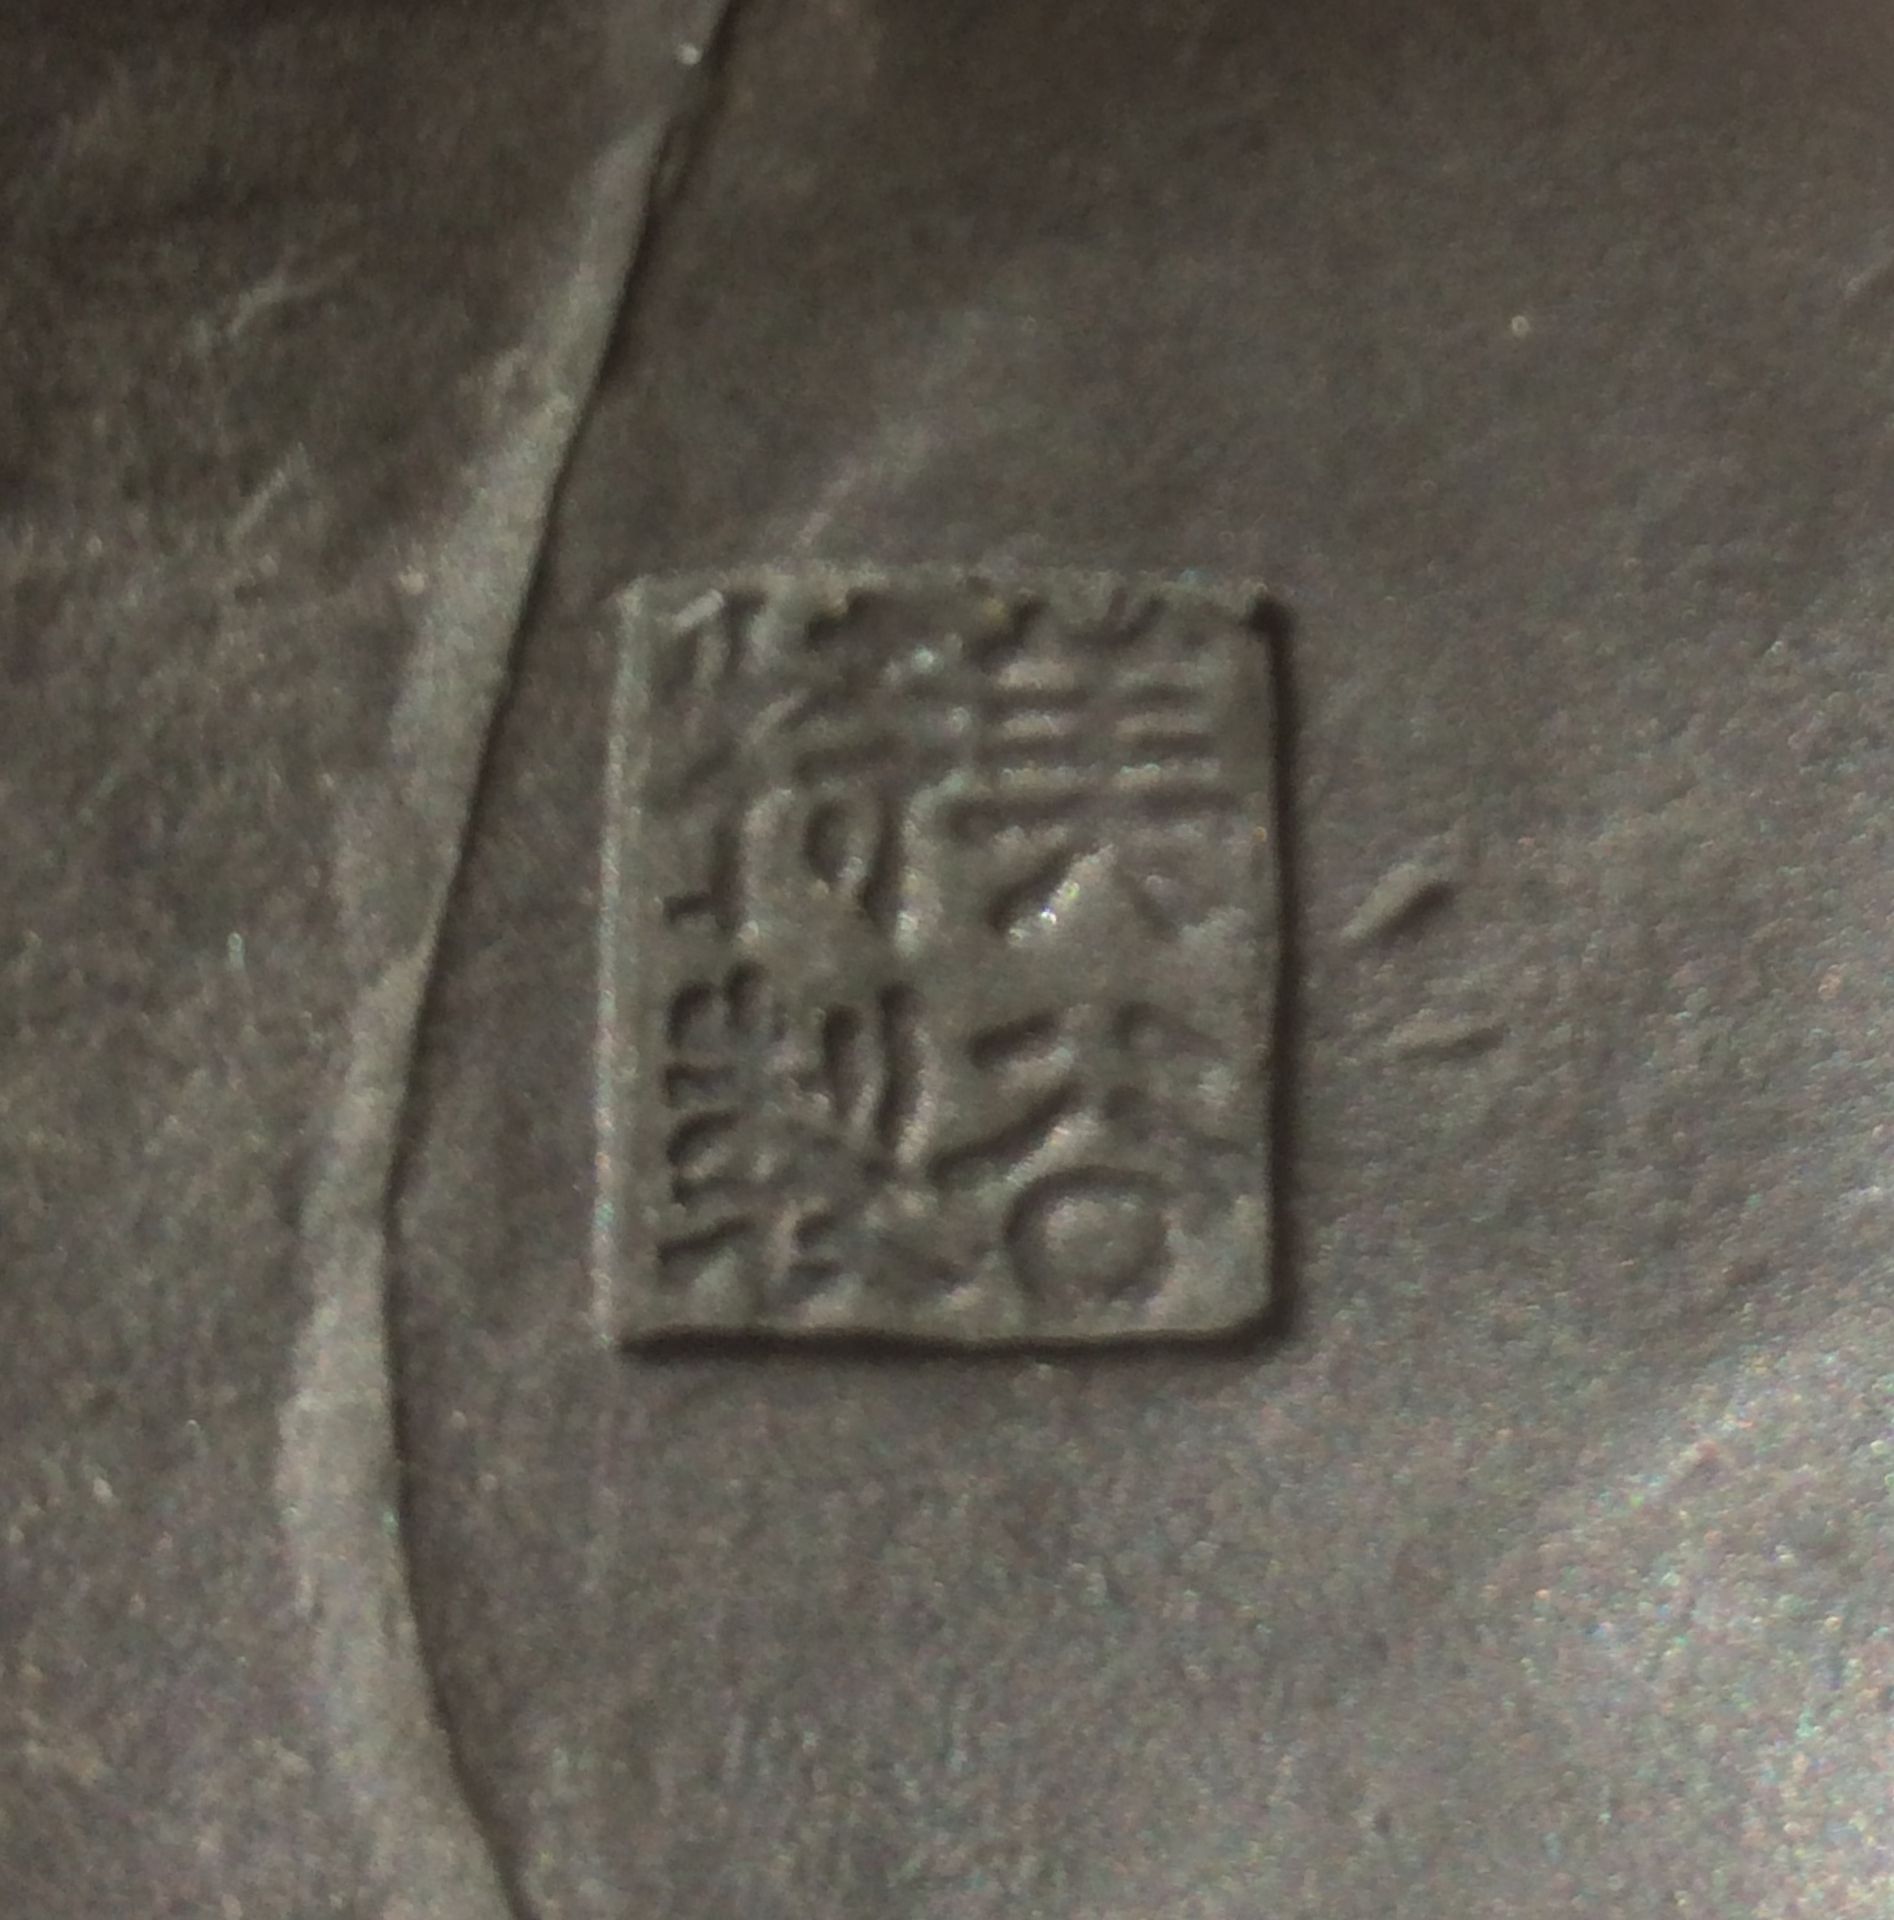 KNABE MIT FISCH UND ANGEL. Japan. Meiji-Zeit. Bronze mit dunkler Patina. Passender Sockel aus Holz - Bild 4 aus 4